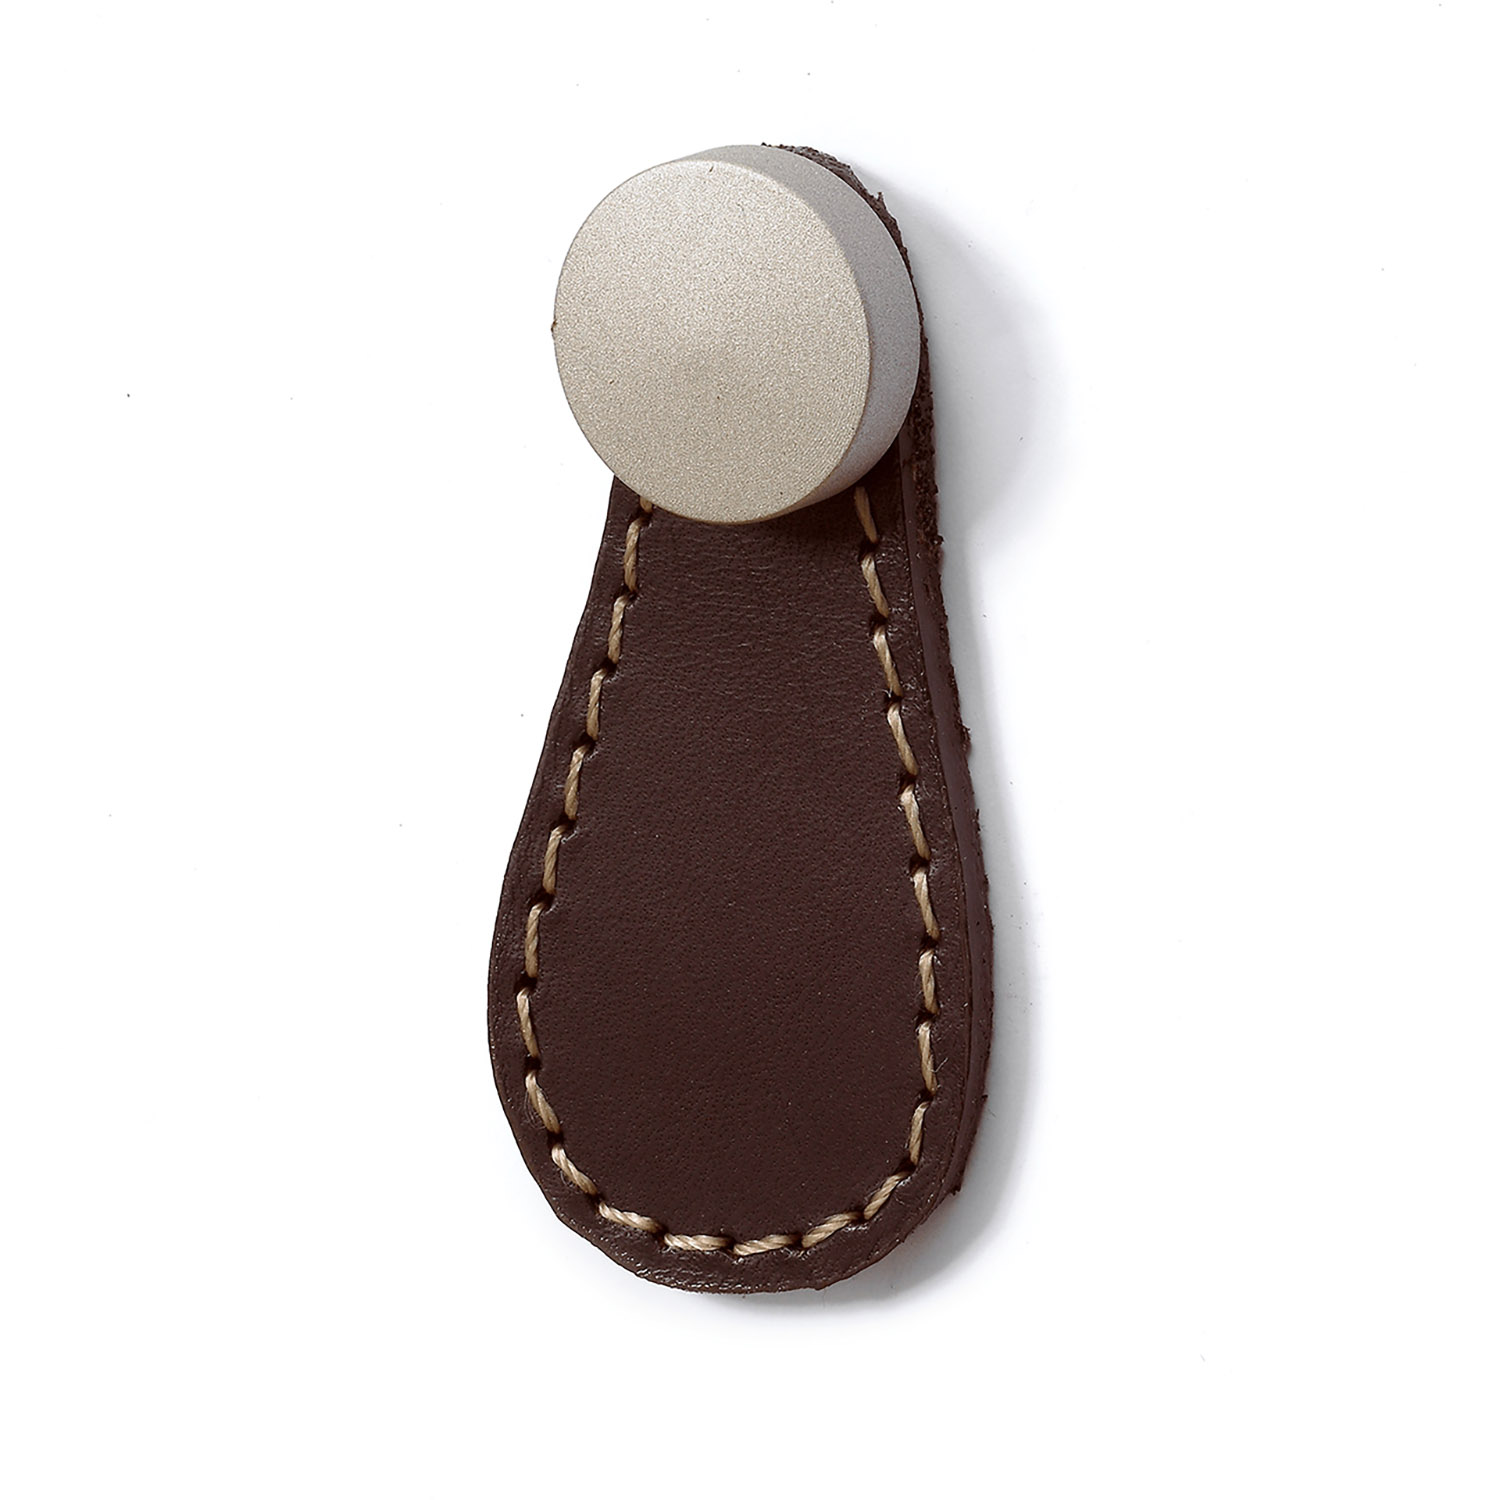 Hettich Galati Dark Brown Leather Knob with Round Socket